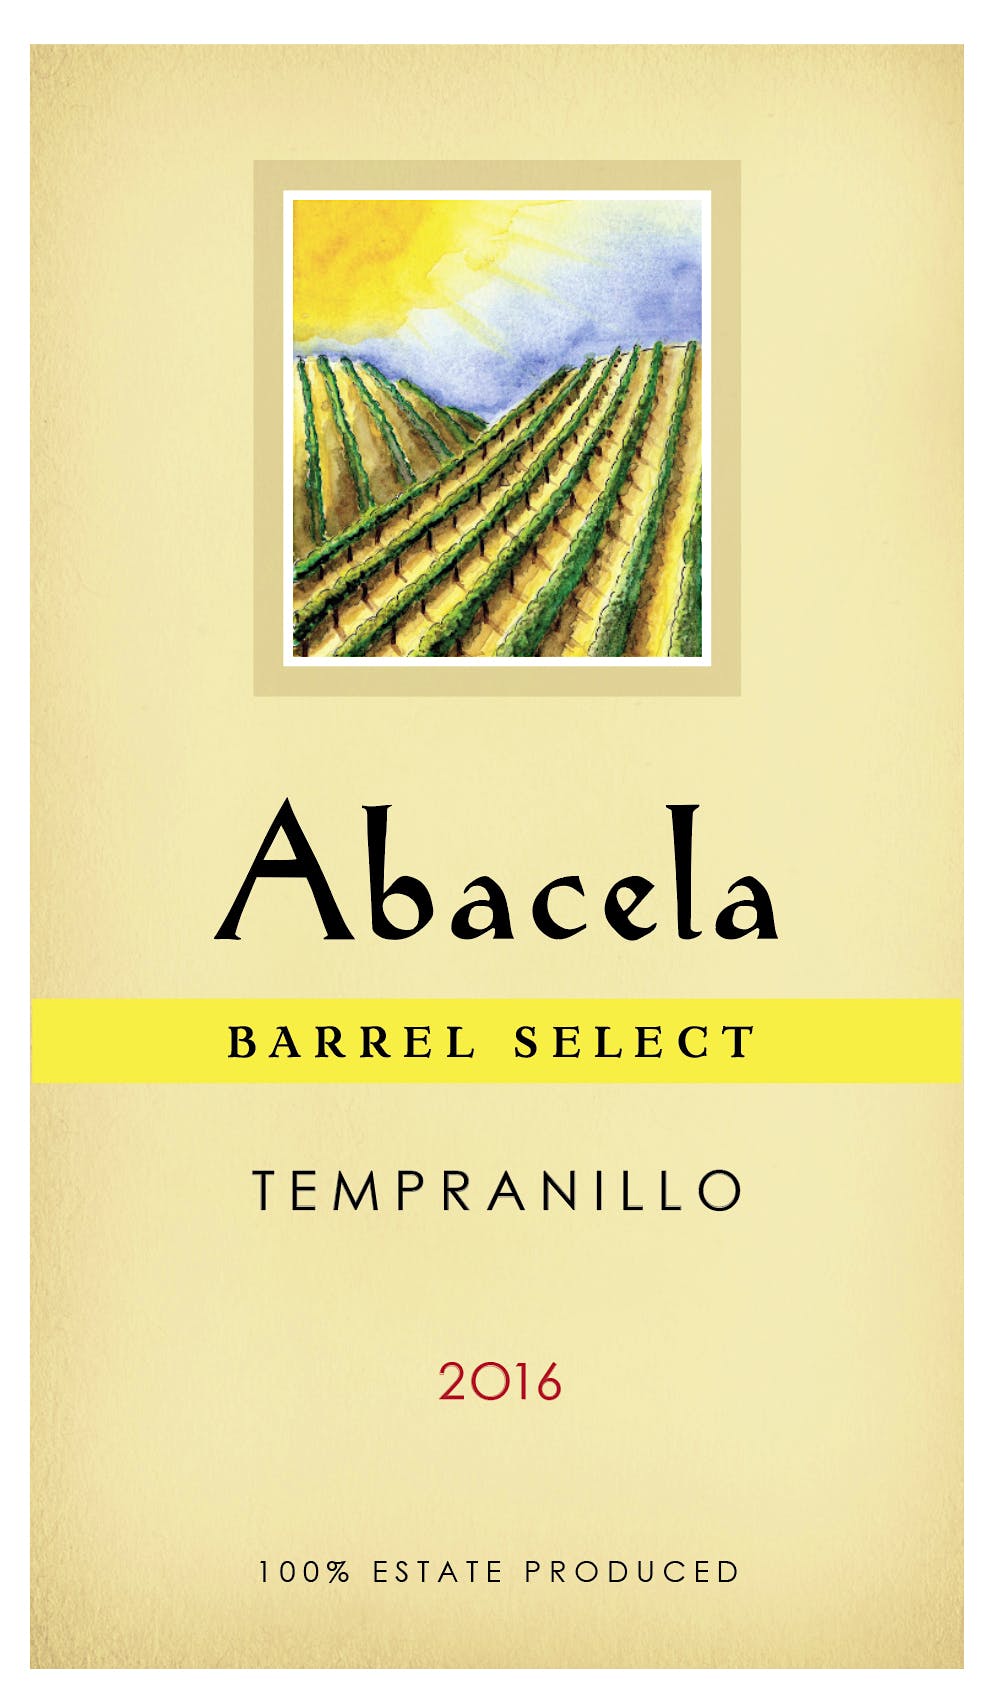 Label for Abacela